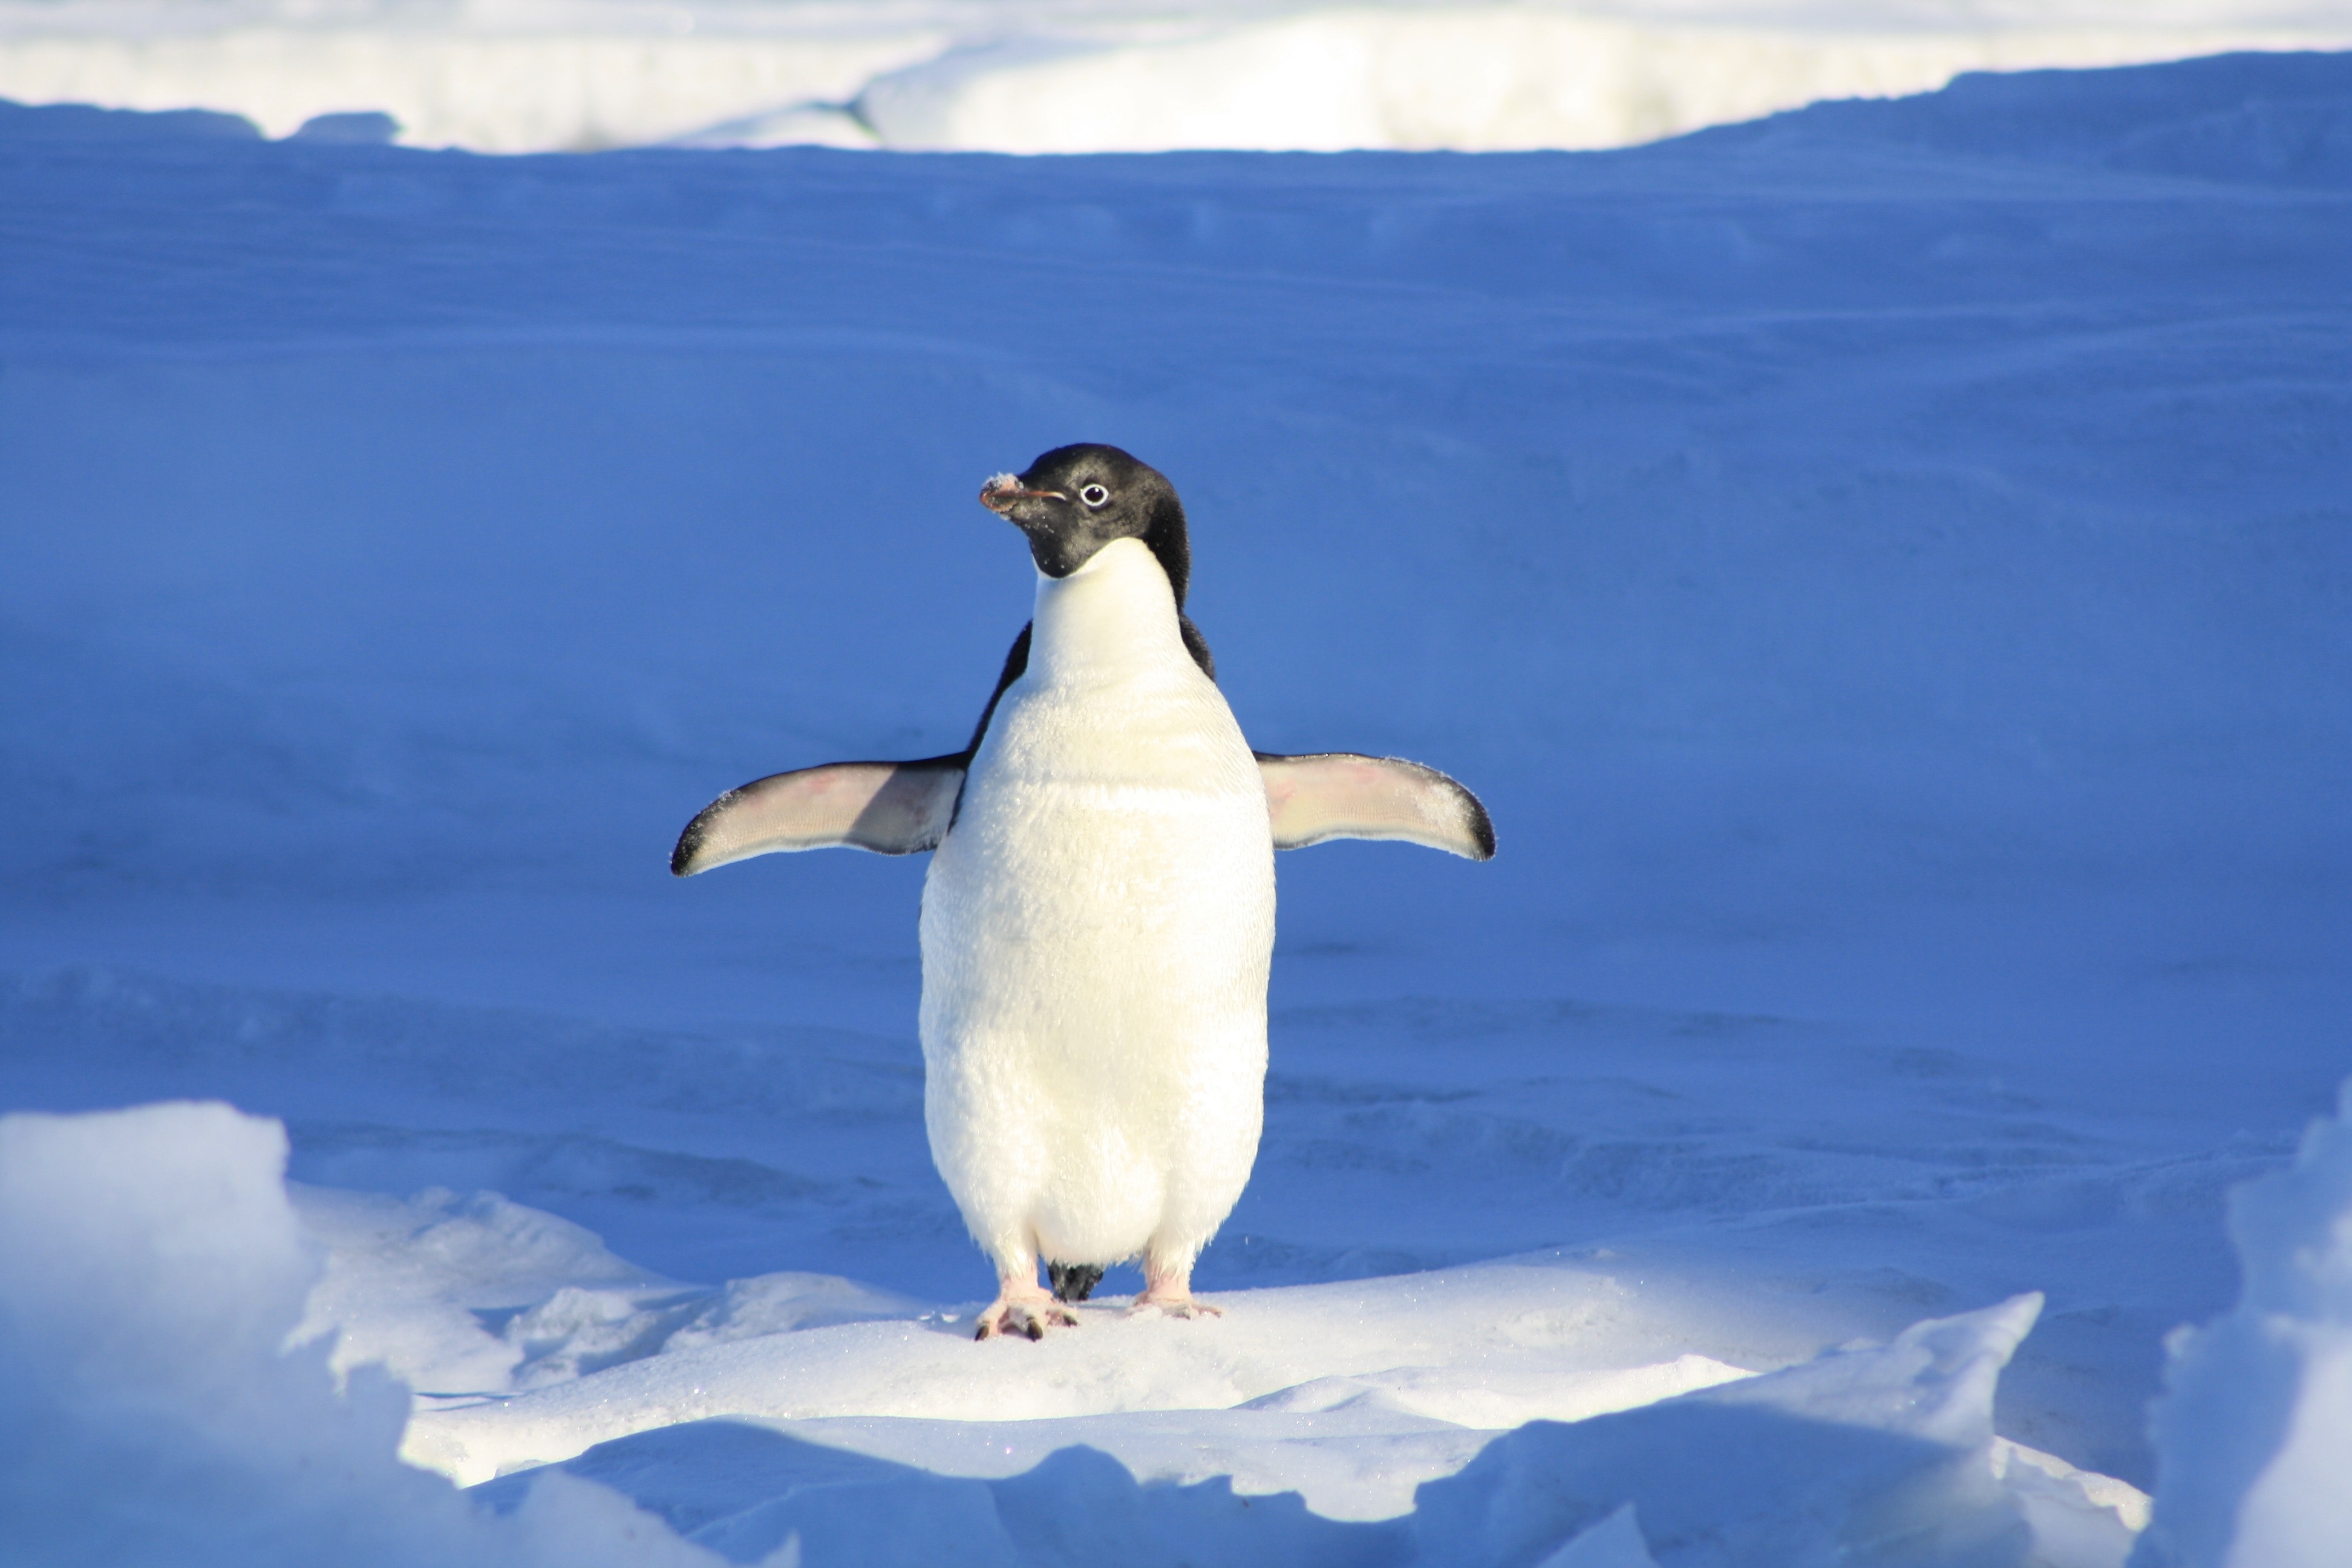 Chú chim cánh cụt con giang cánh nhìn rất dễ thương